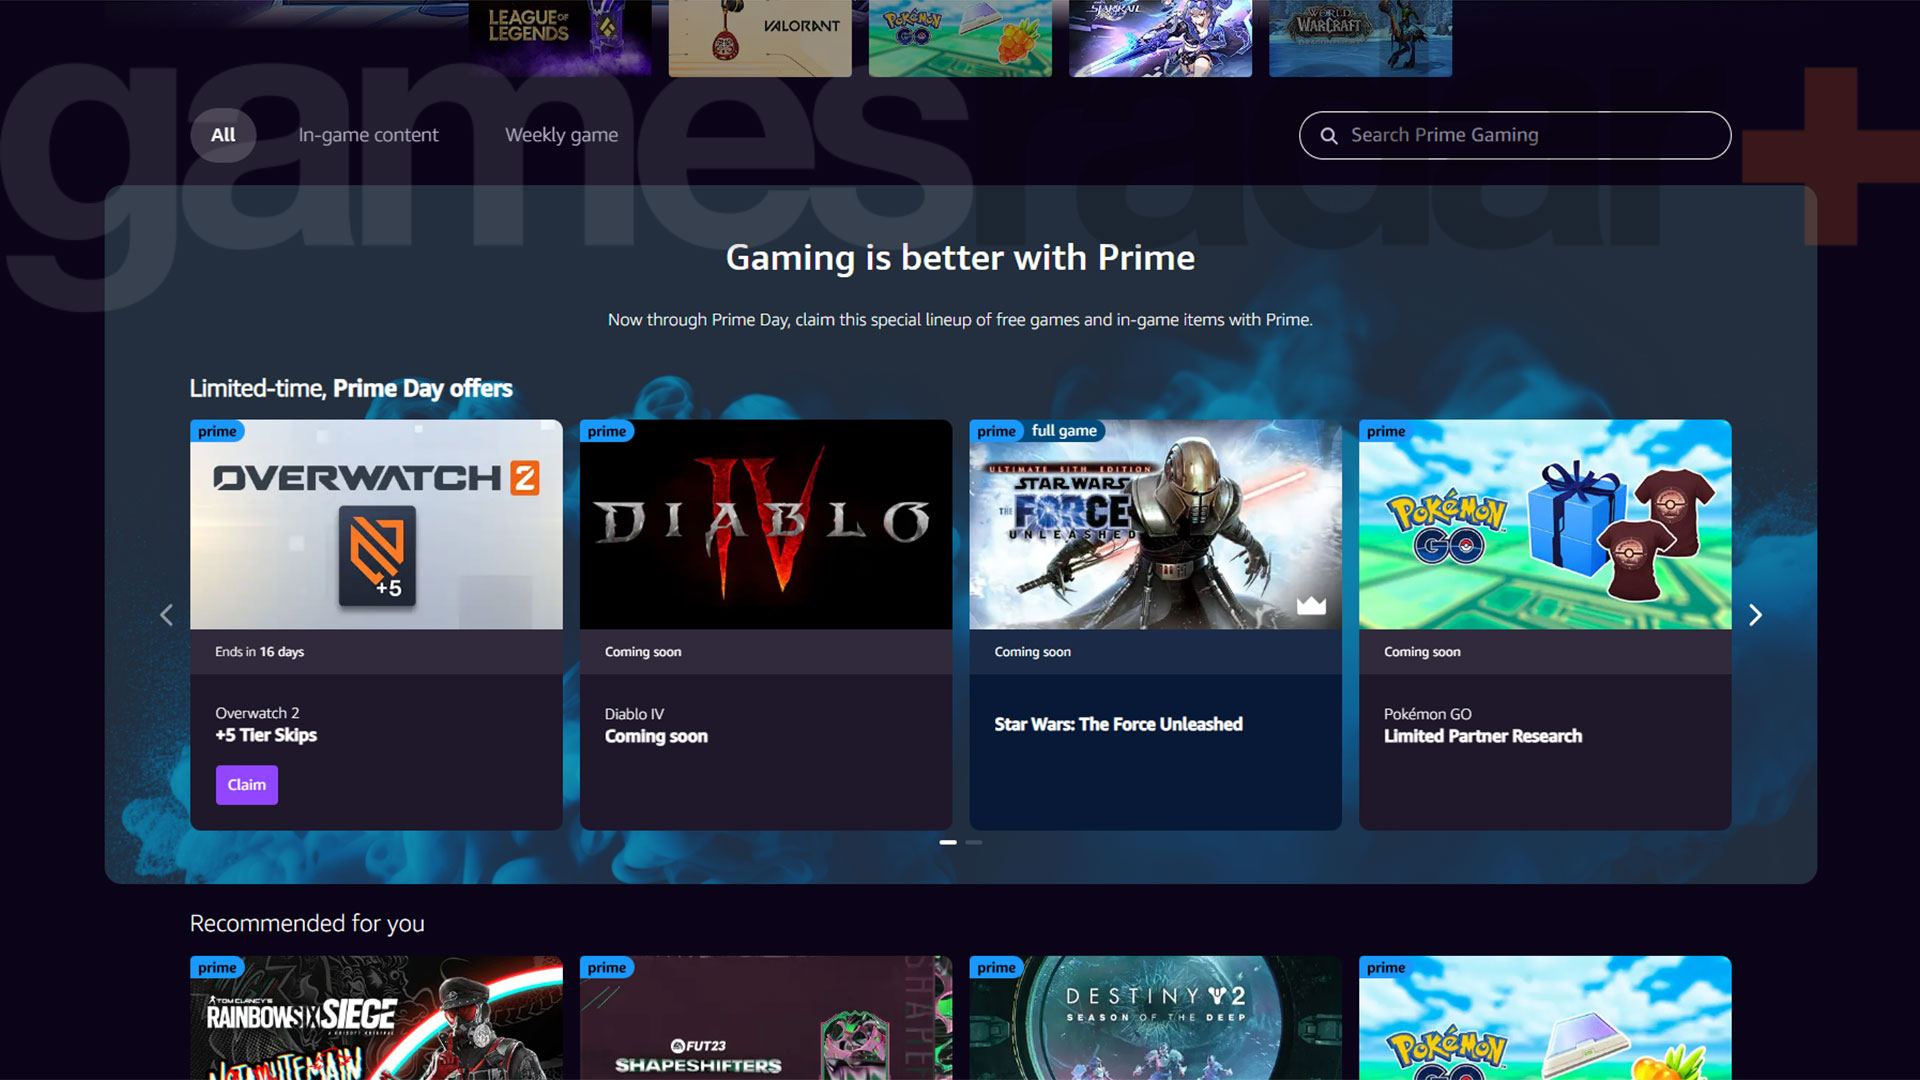 La page d'accueil de Prime Gaming, qui indique que les récompenses de Diablo 4 seront bientôt disponibles.